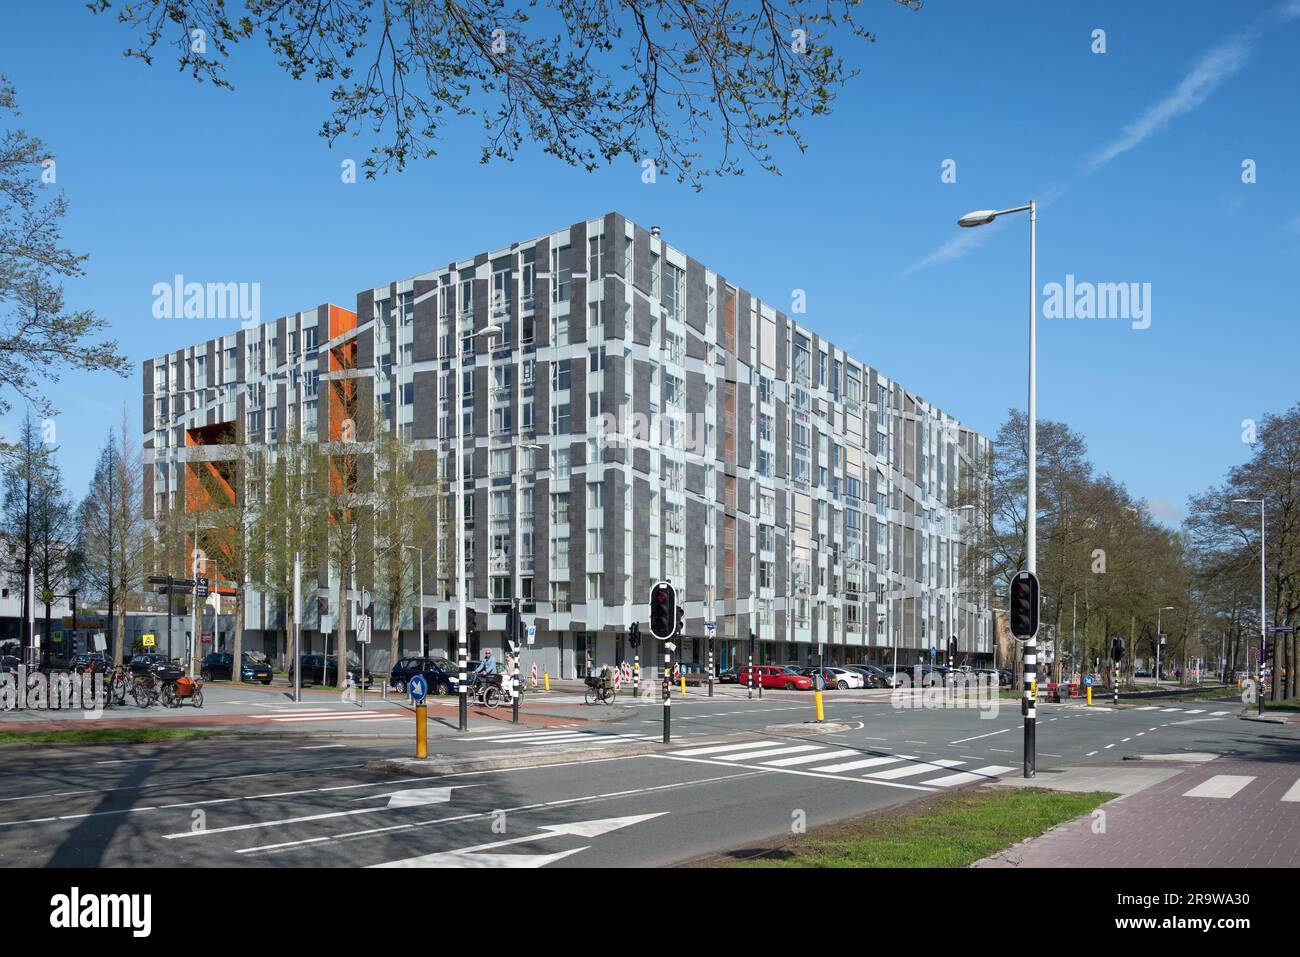 Amsterdam, Netherlands - Gelderlandplein housing by Eric Van Egeraat Stock Photo